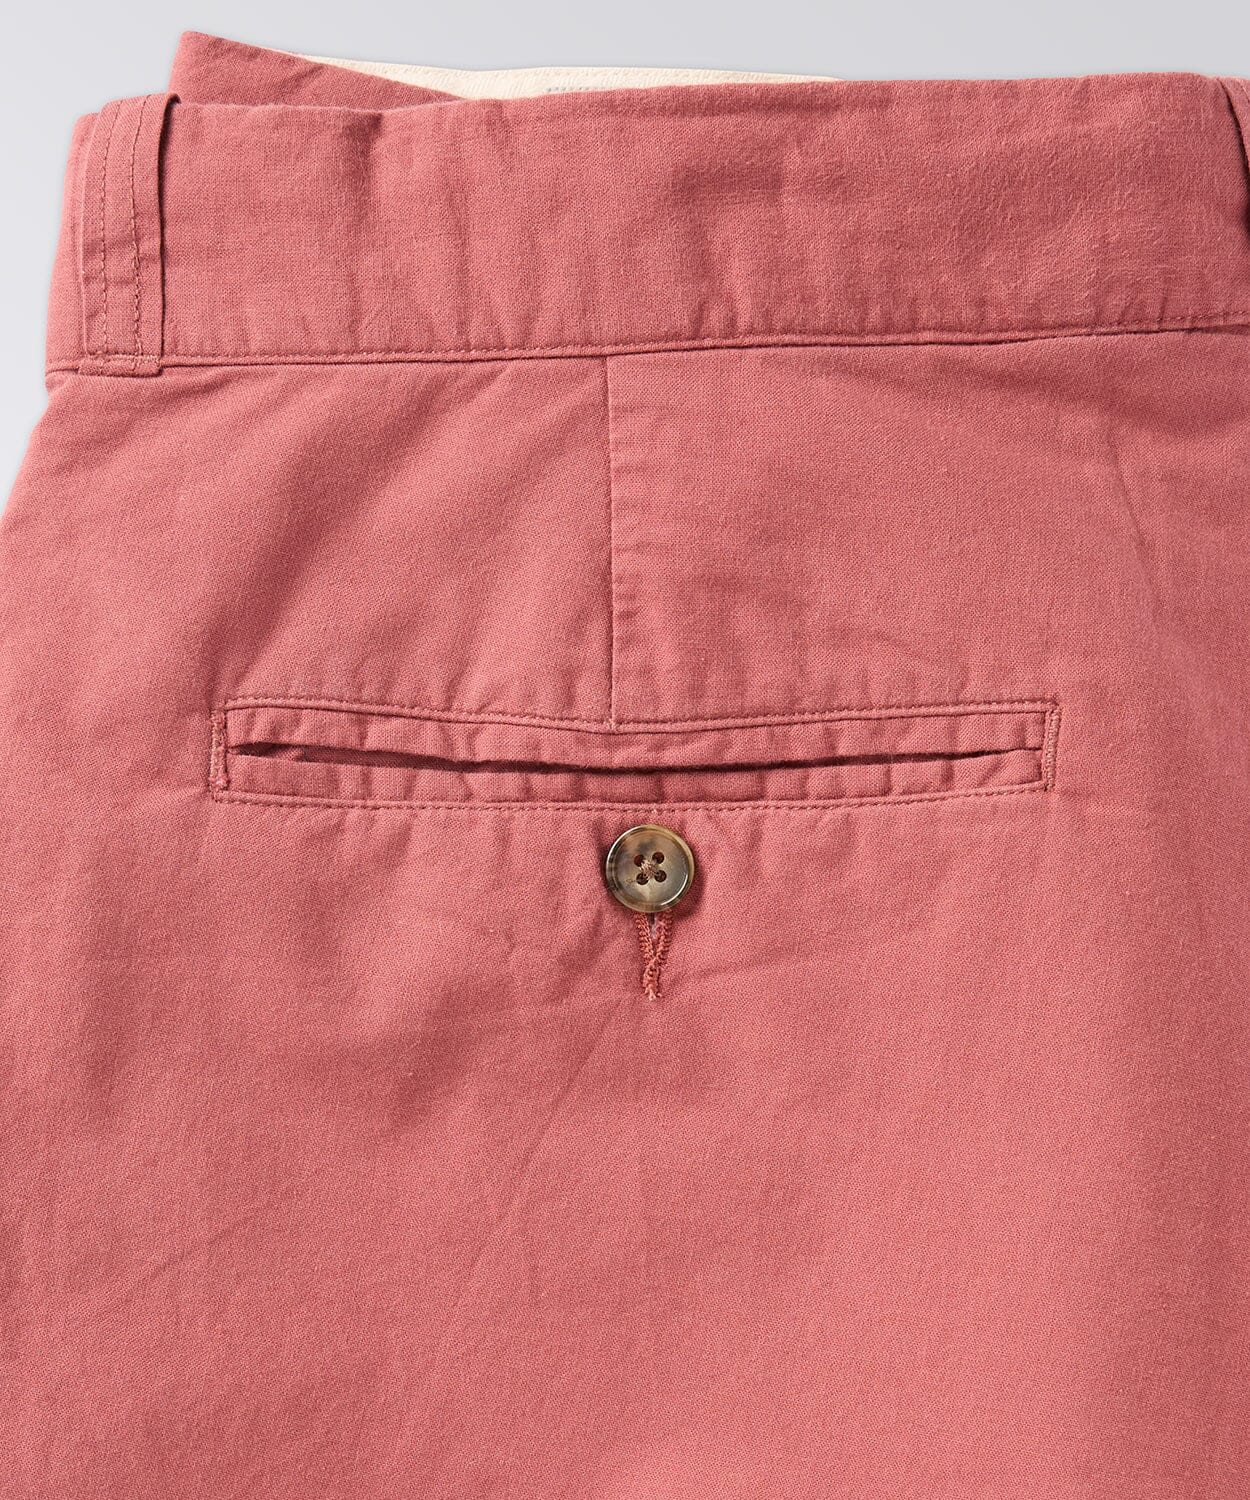 pocket of a mens short